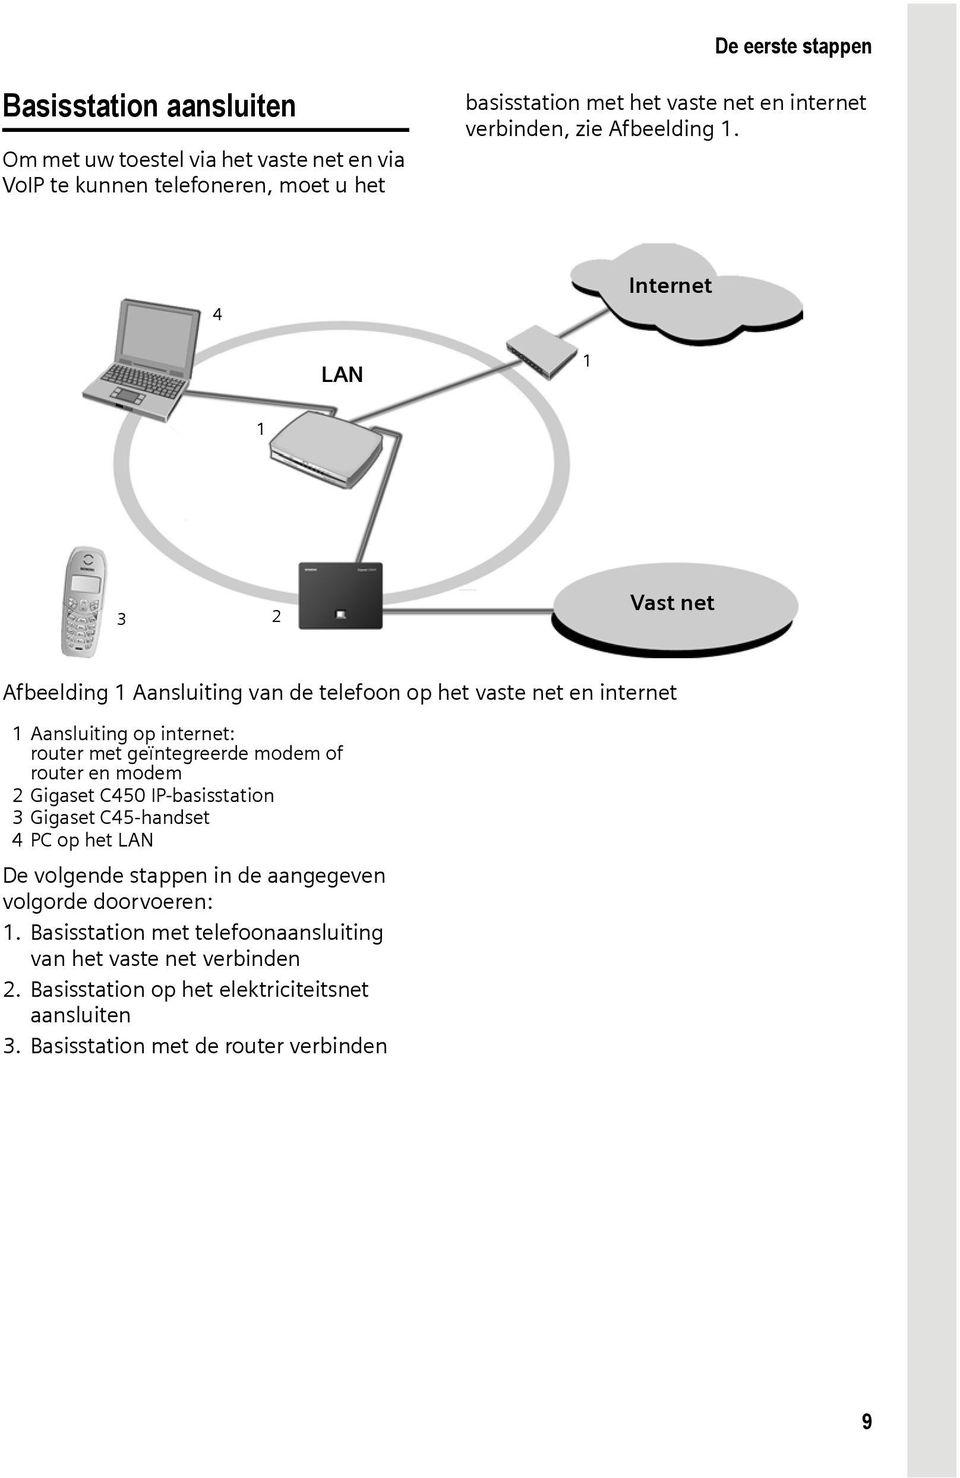 4 LAN 1 Internet 1 3 2 Vast net Afbeelding 1 Aansluiting van de telefoon op het vaste net en internet 1 Aansluiting op internet: router met geïntegreerde modem of